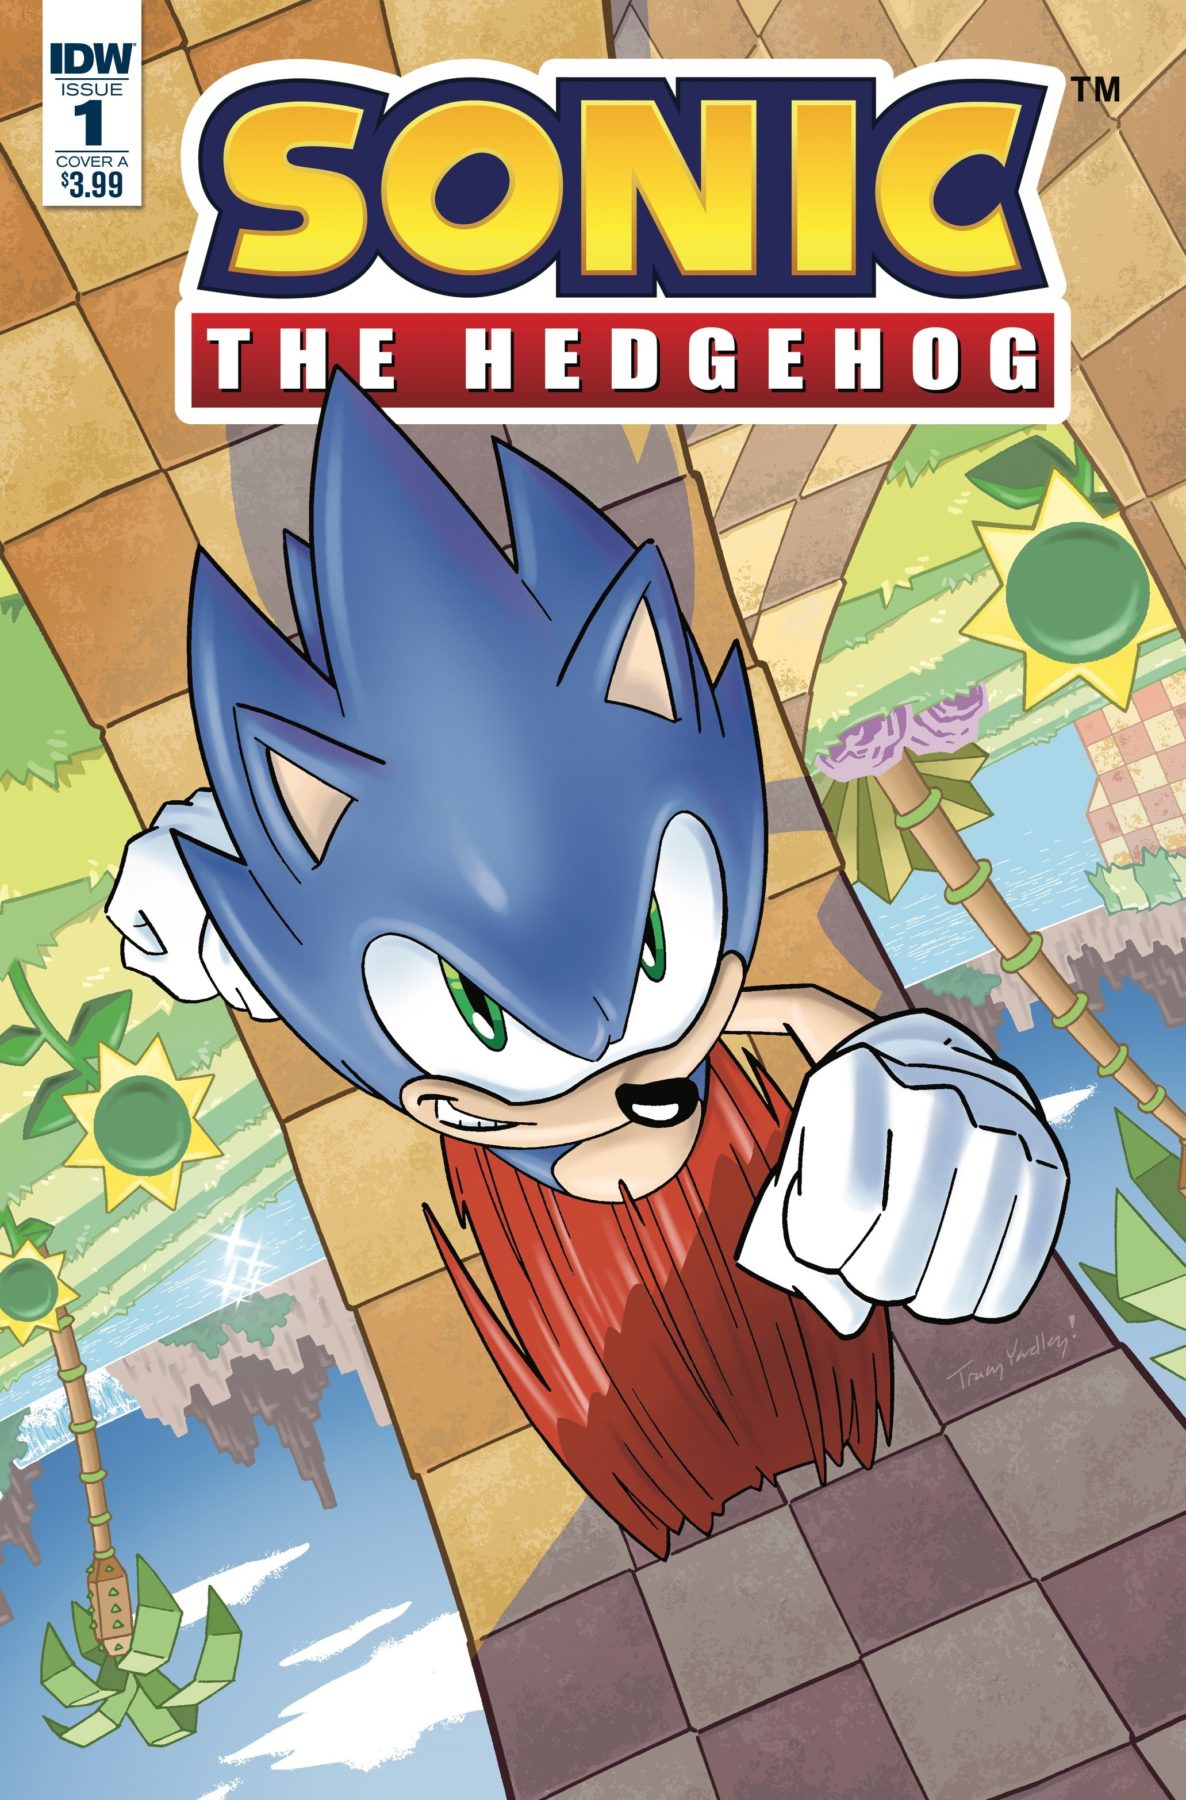 Sonic the Hedgehog vuelve a los cómics esta primavera